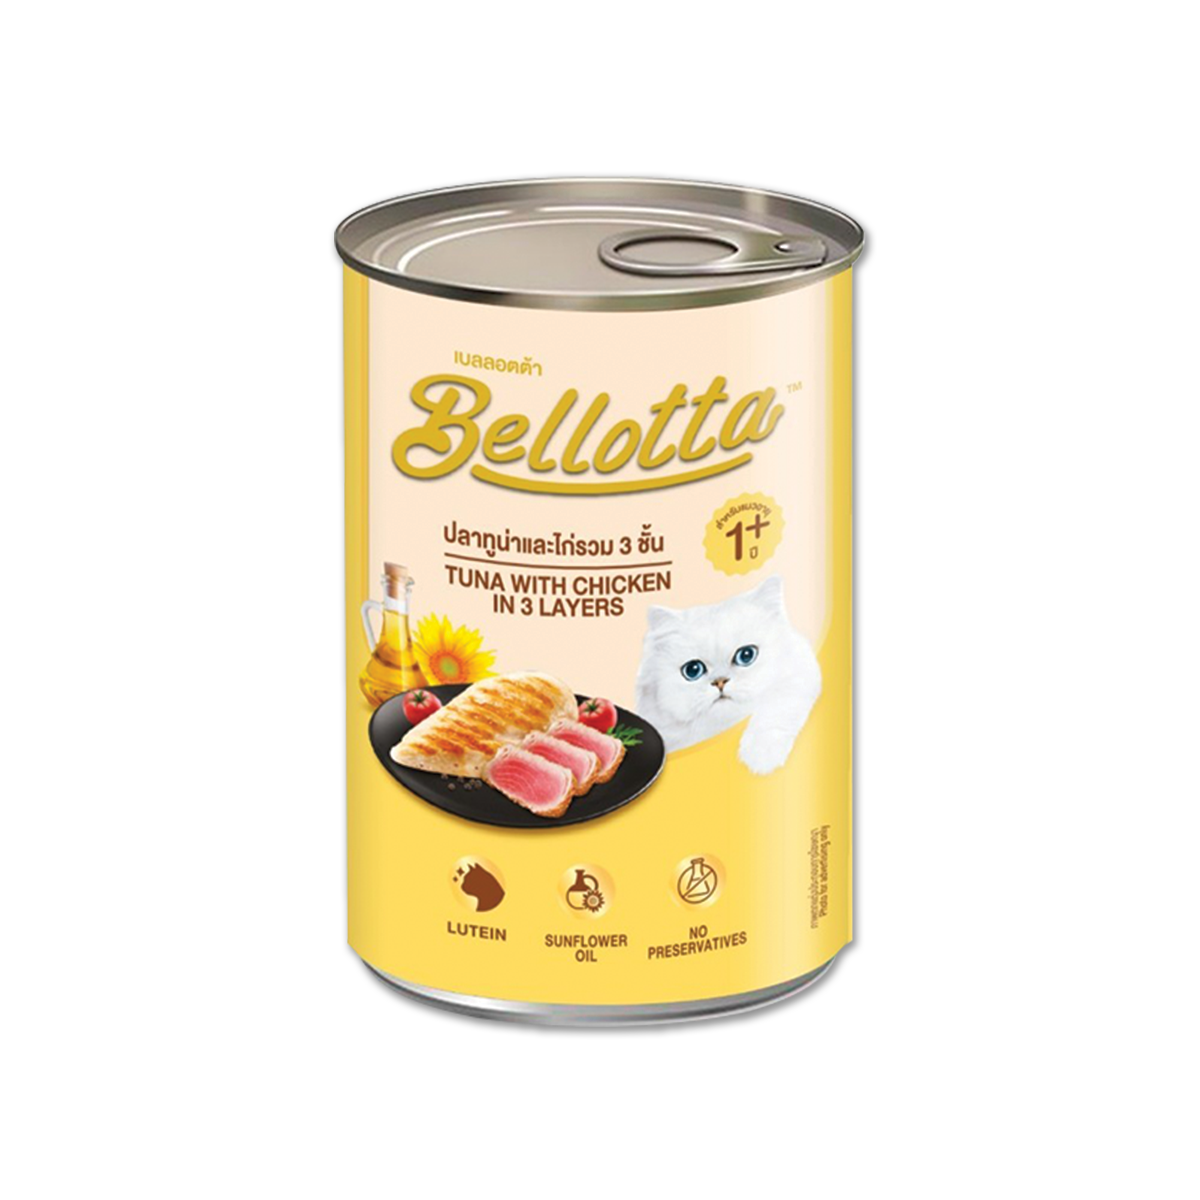 Bellotta เบลลอตต้า อาหารแมวกระป๋อง รสปลาทูน่าและไก่รวม 3 ชั้น ขนาด 400 กรัม